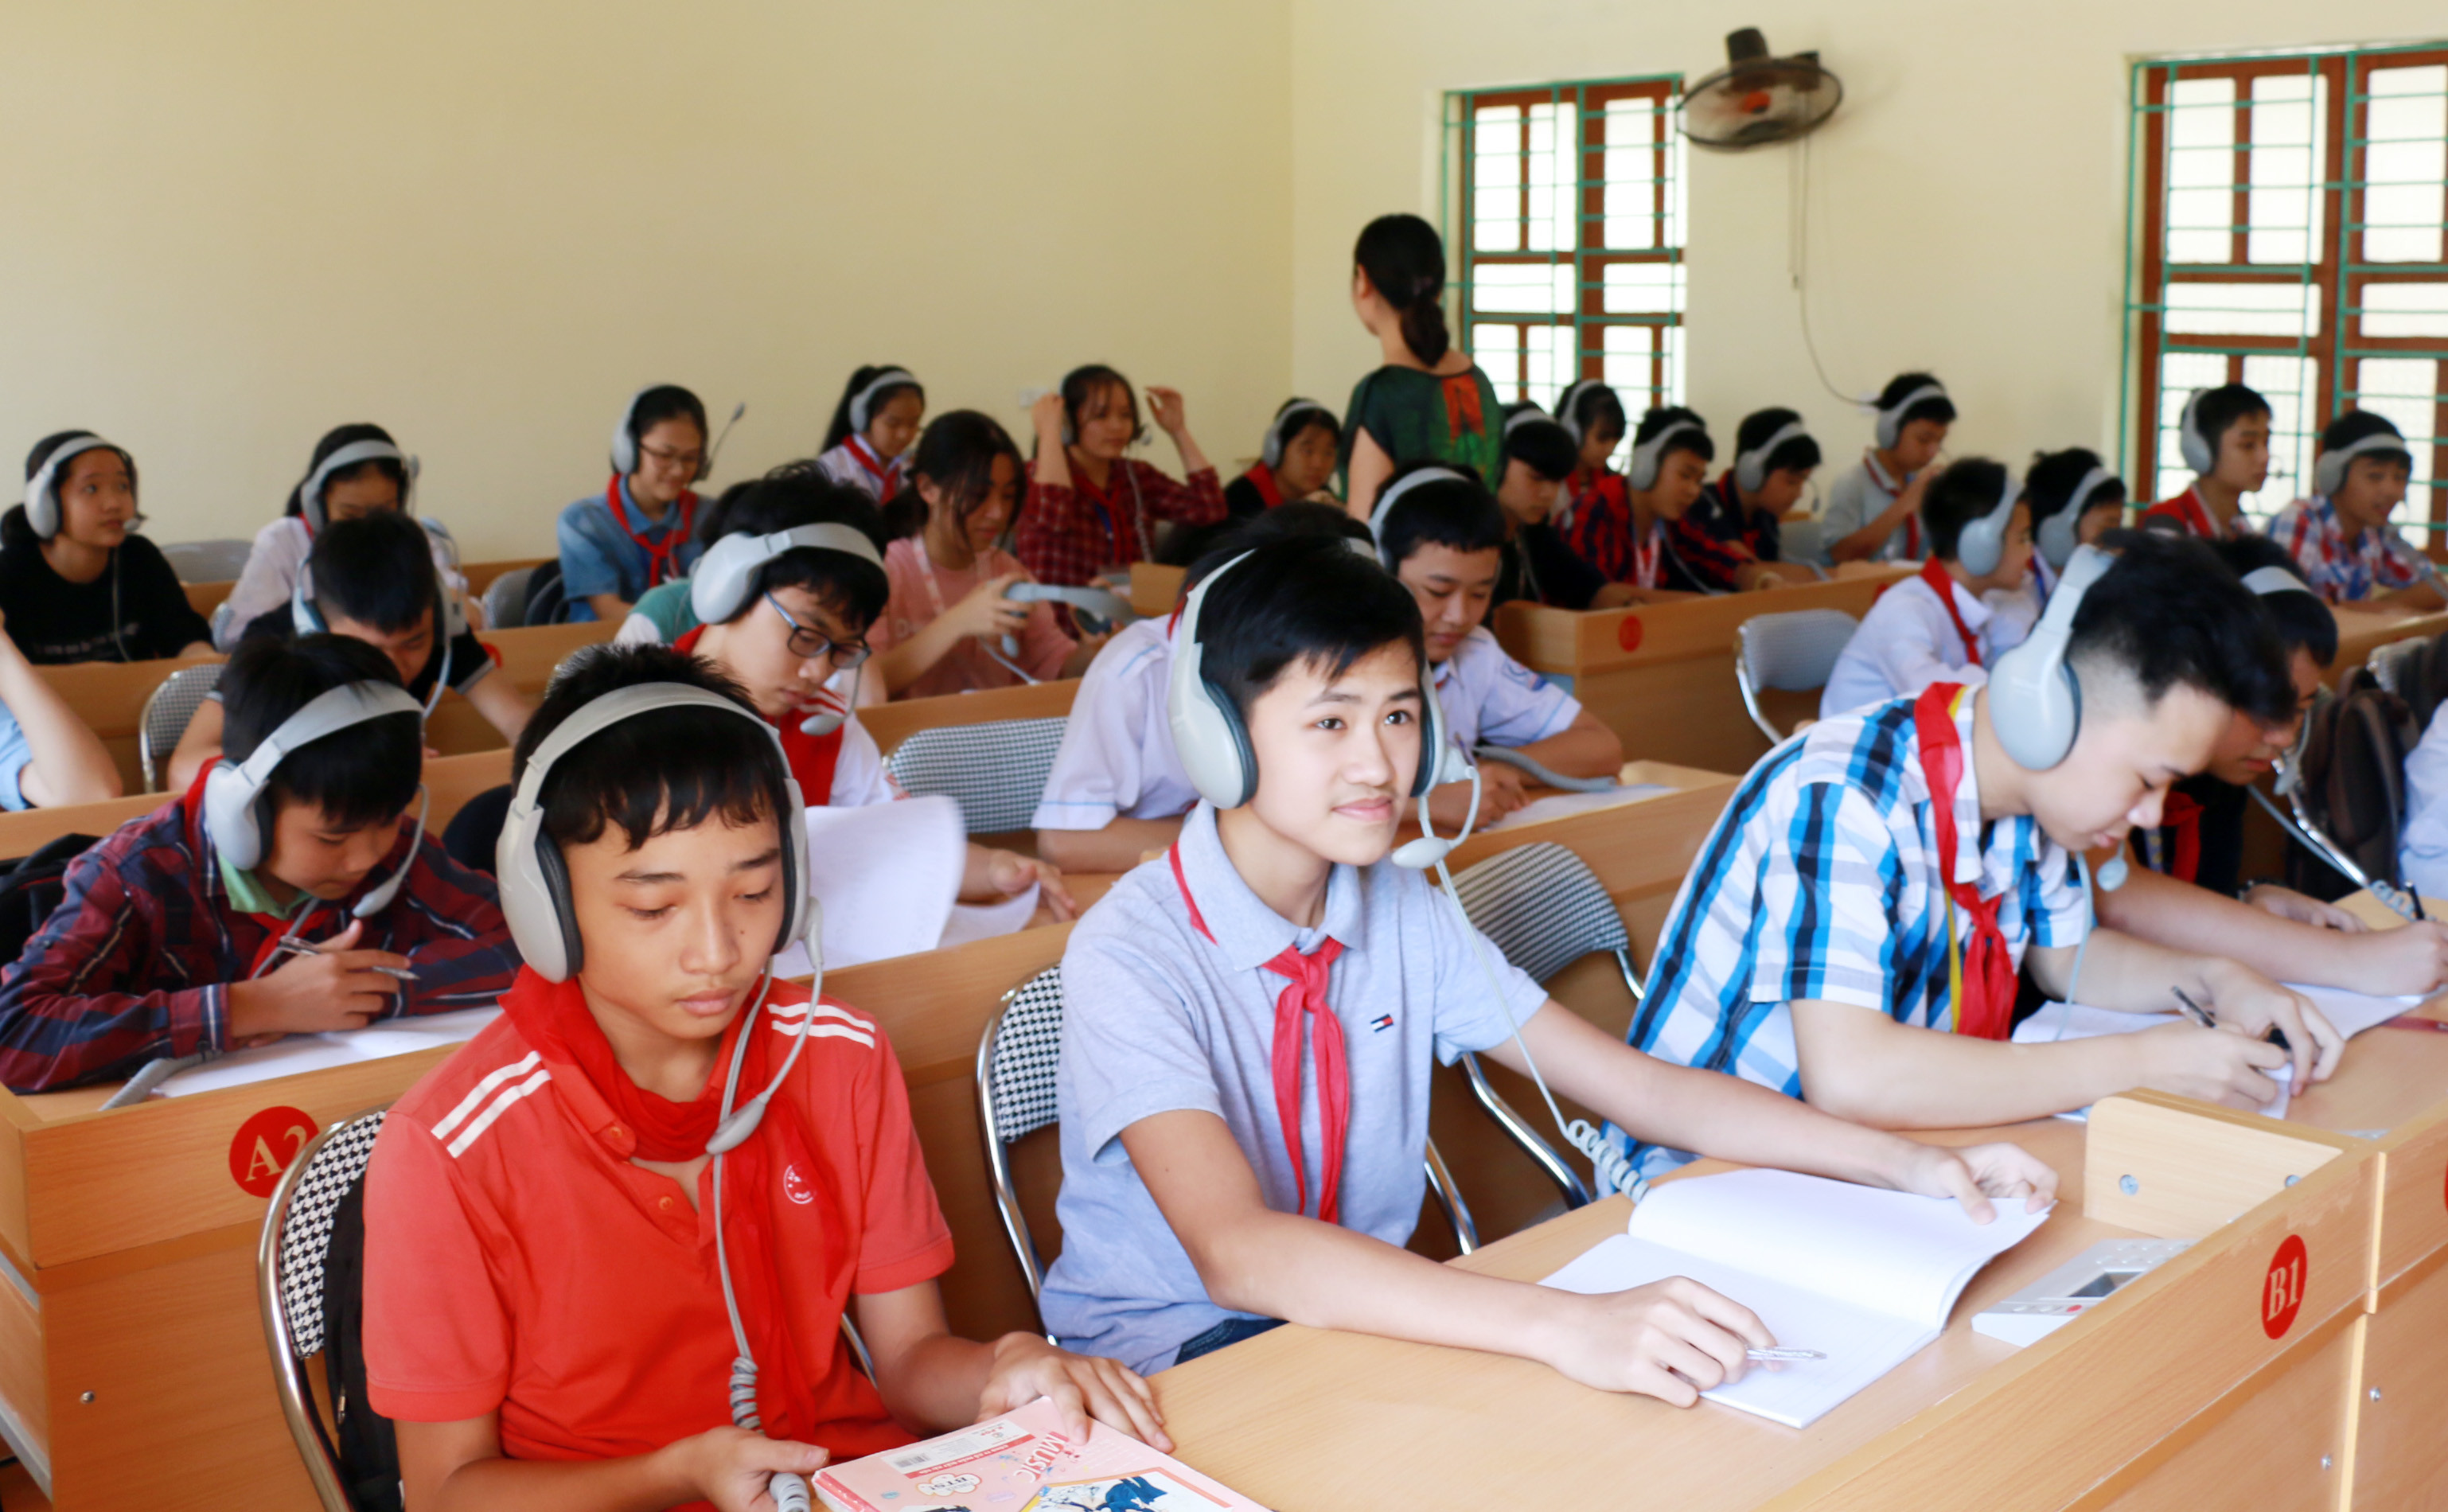 Giờ học ngoại ngữ của học sinh Trường THCS Tôn Quang Phiệt - Thanh Chương, 1 trong 14 trường được chọn xây dựng trường trọng điểm chất lượng cao. Ảnh: Mỹ Hà